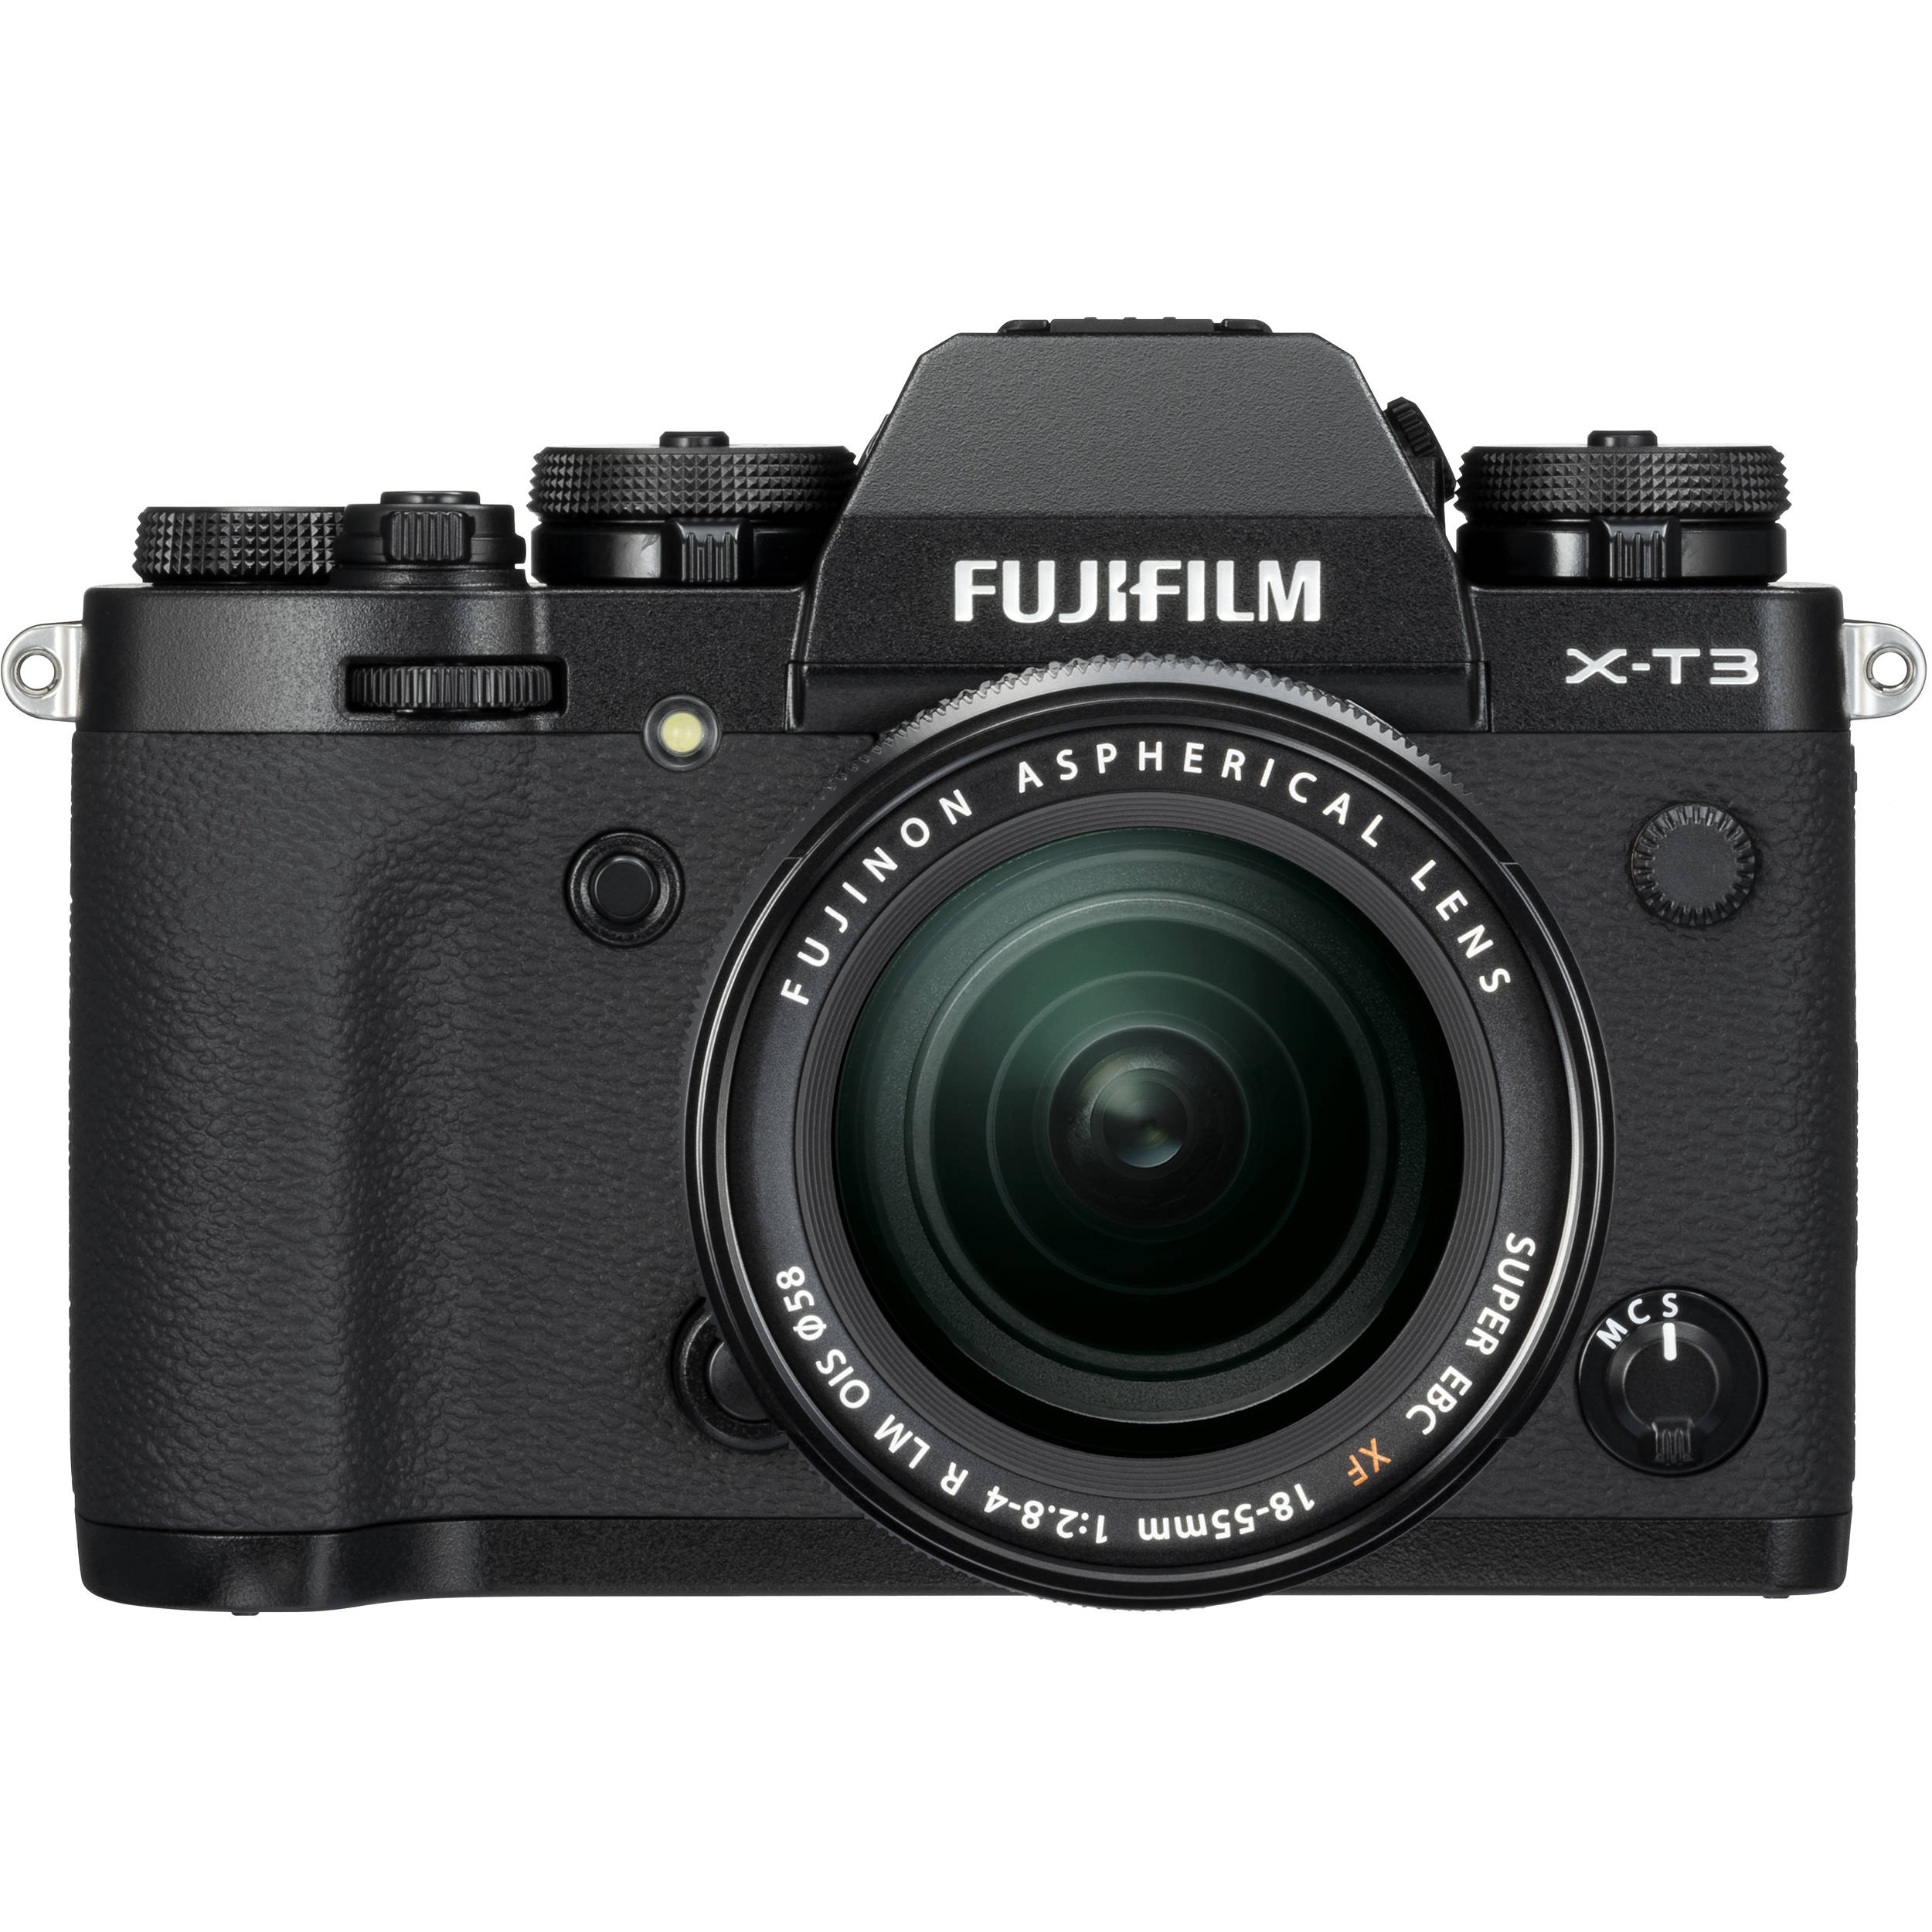 Fujifilm X-T3 Kit (XF 18-55mm f/2.8-4 R LM OIS) Black